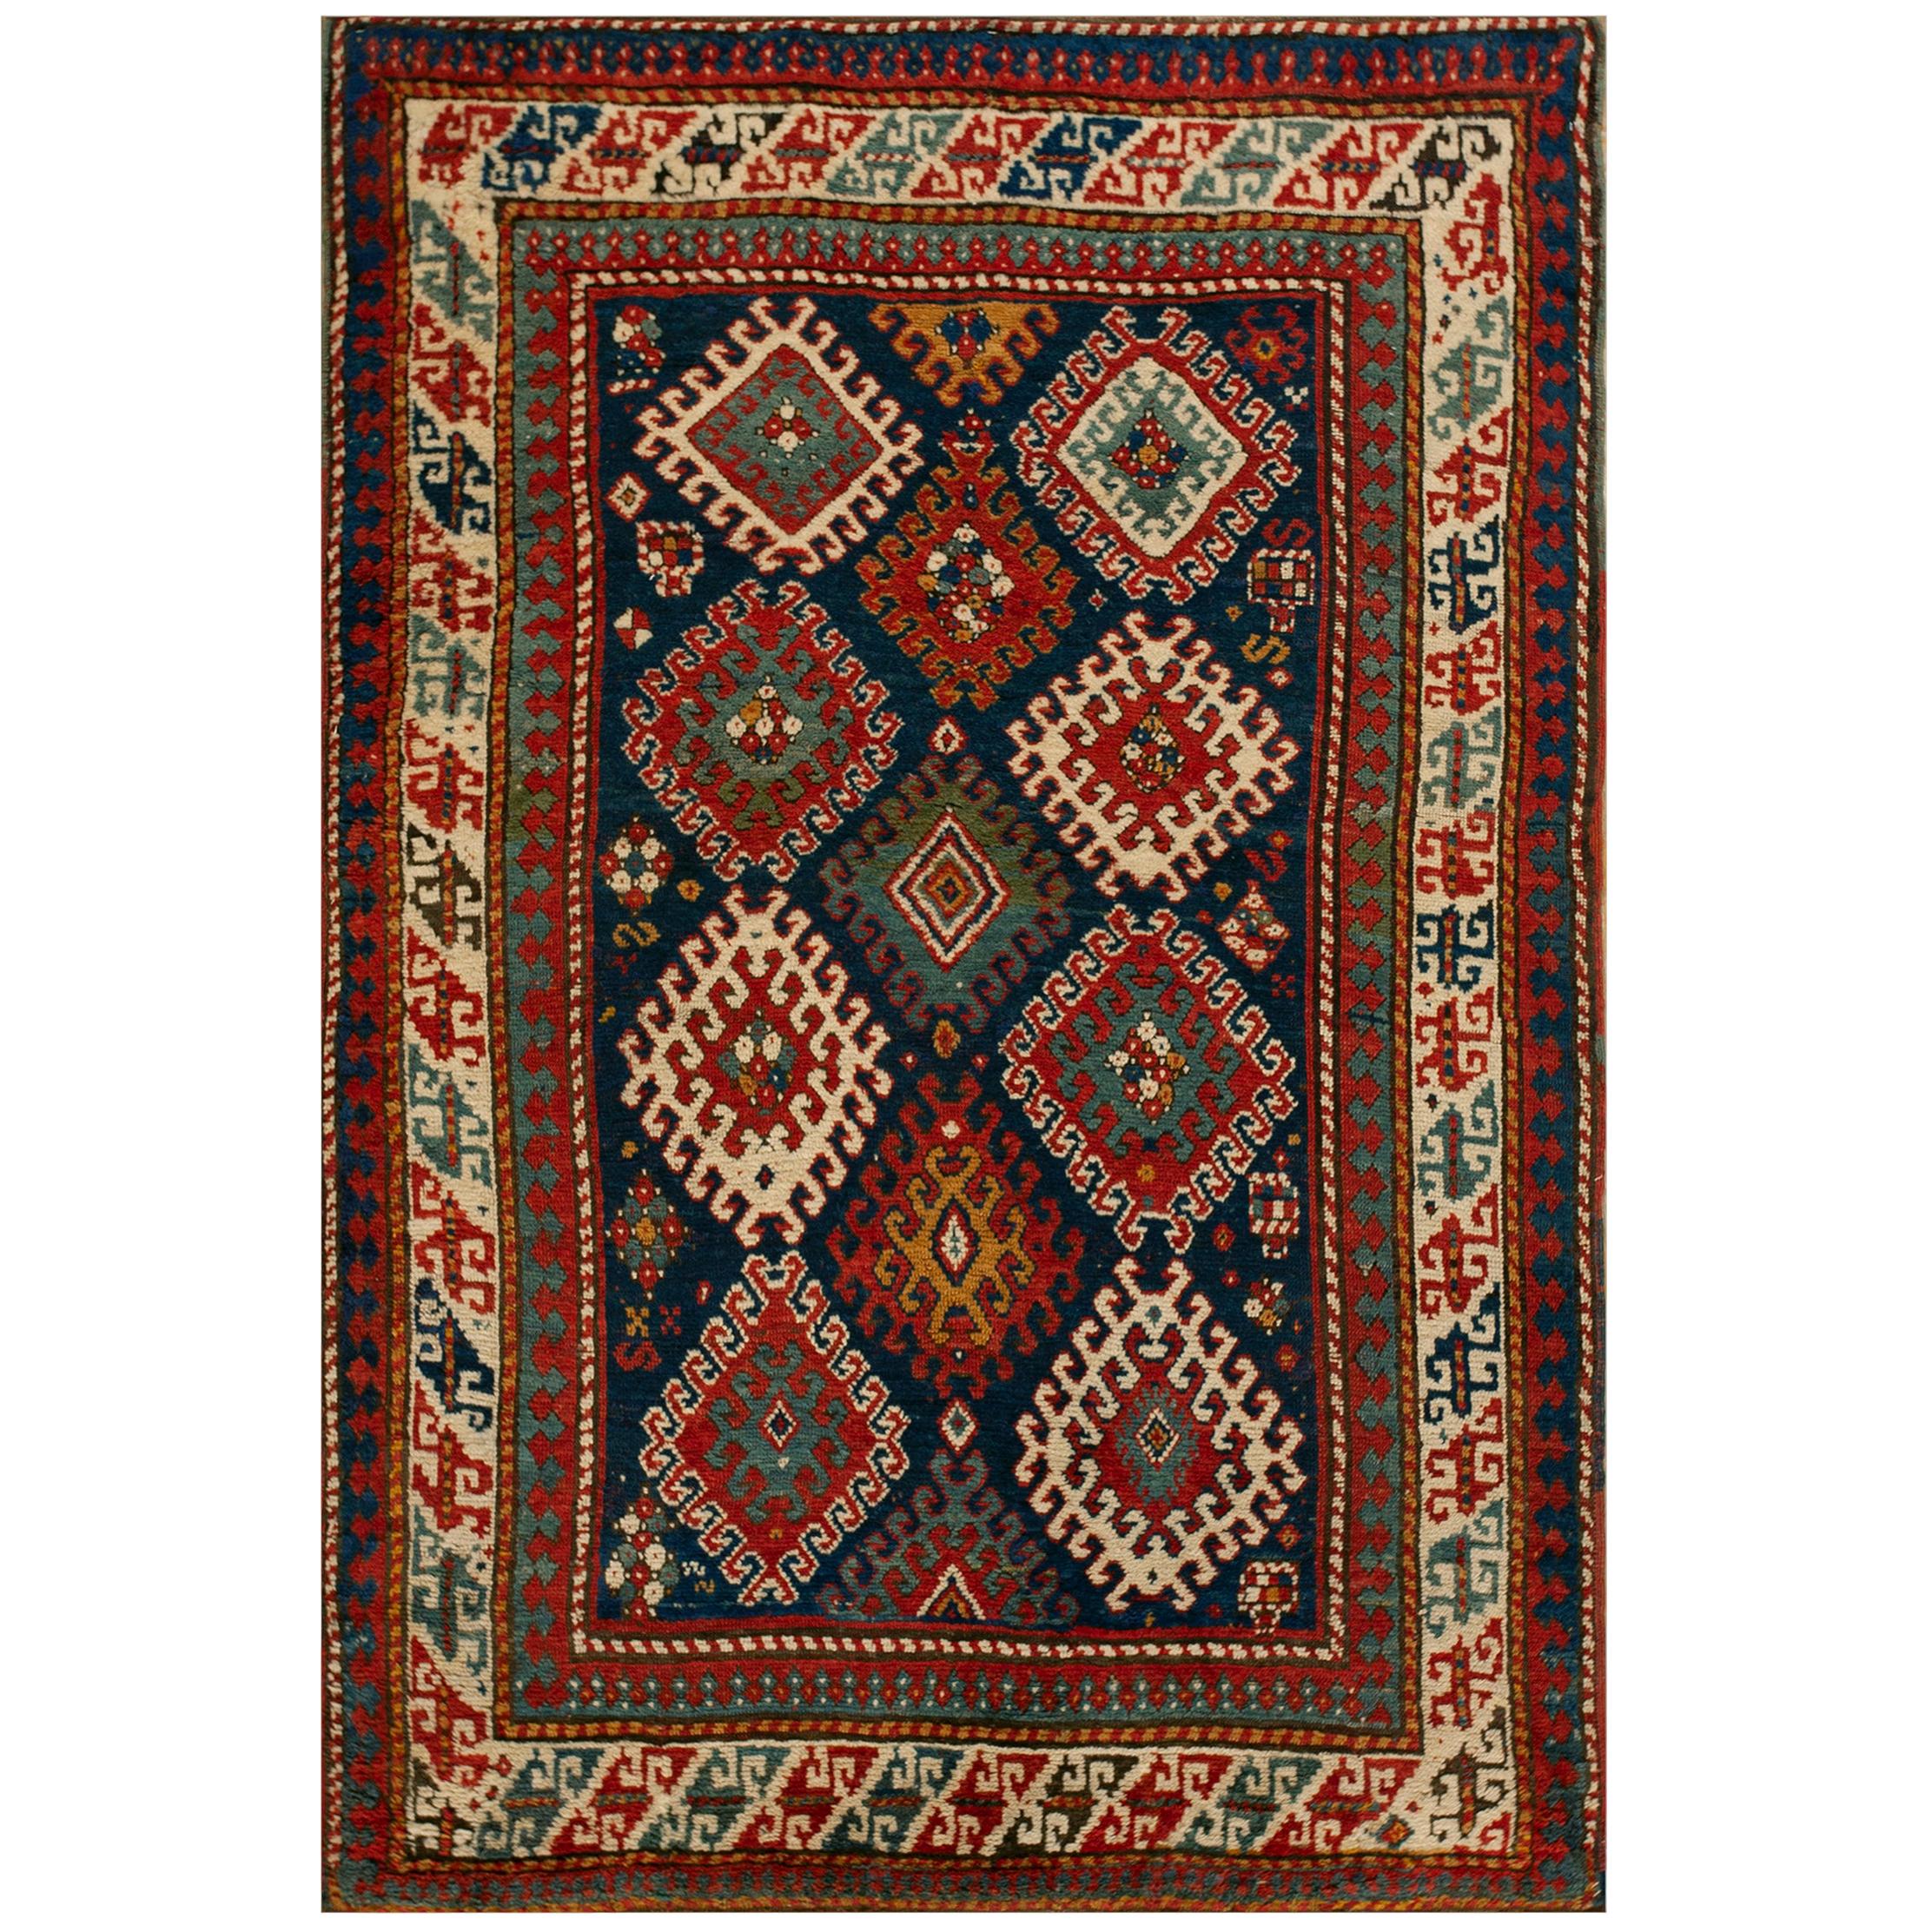 Kaukasischer Bordjalou-Kaukasischer Teppich aus dem 19. Jahrhundert ( 4'10" x 7'2" - 147 x 218")